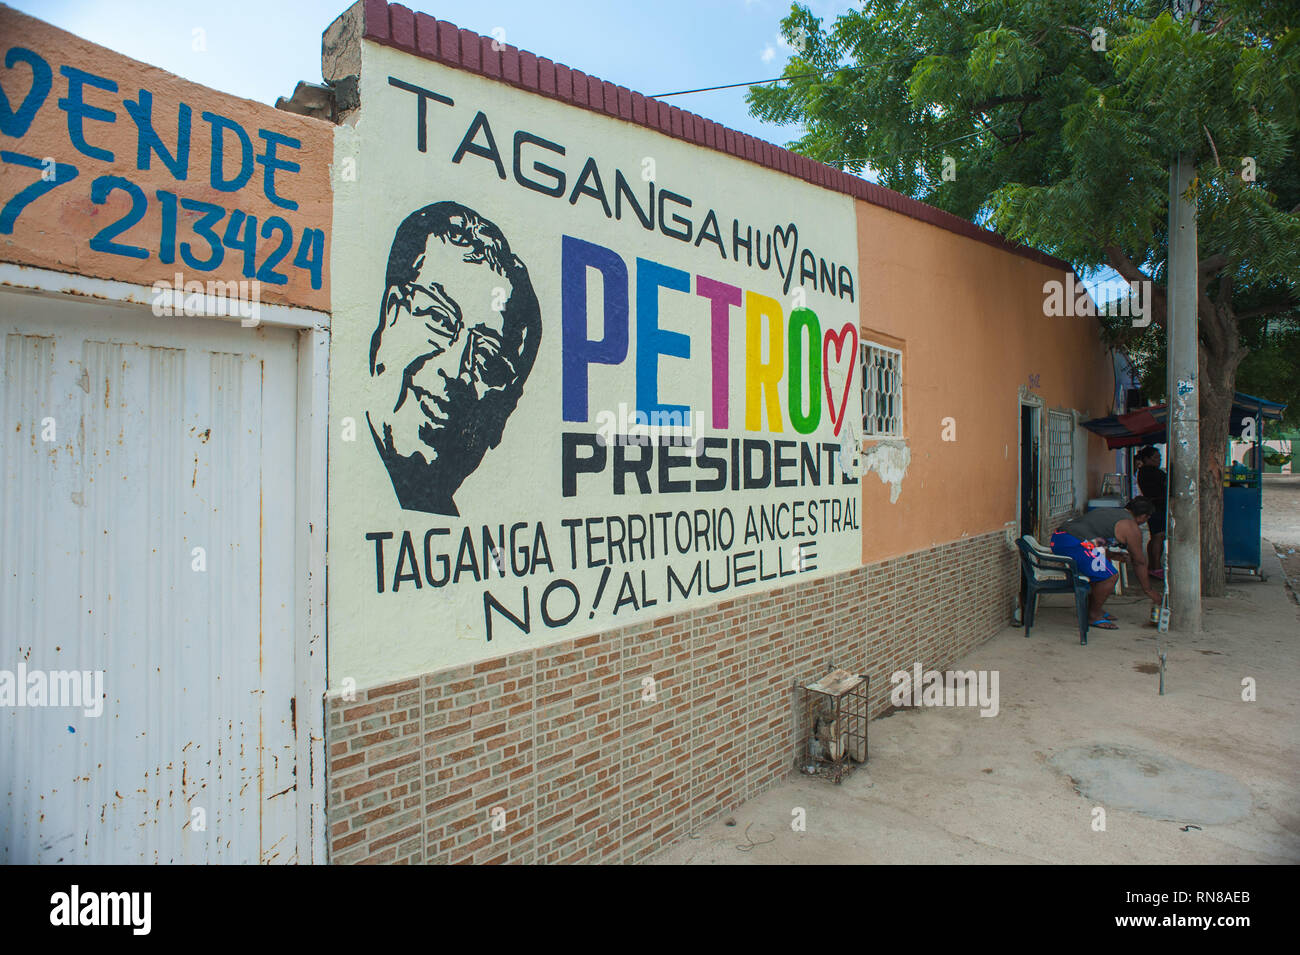 Taganga, Santa Marta, Colombia: Petro presidente campagna politica. Foto Stock